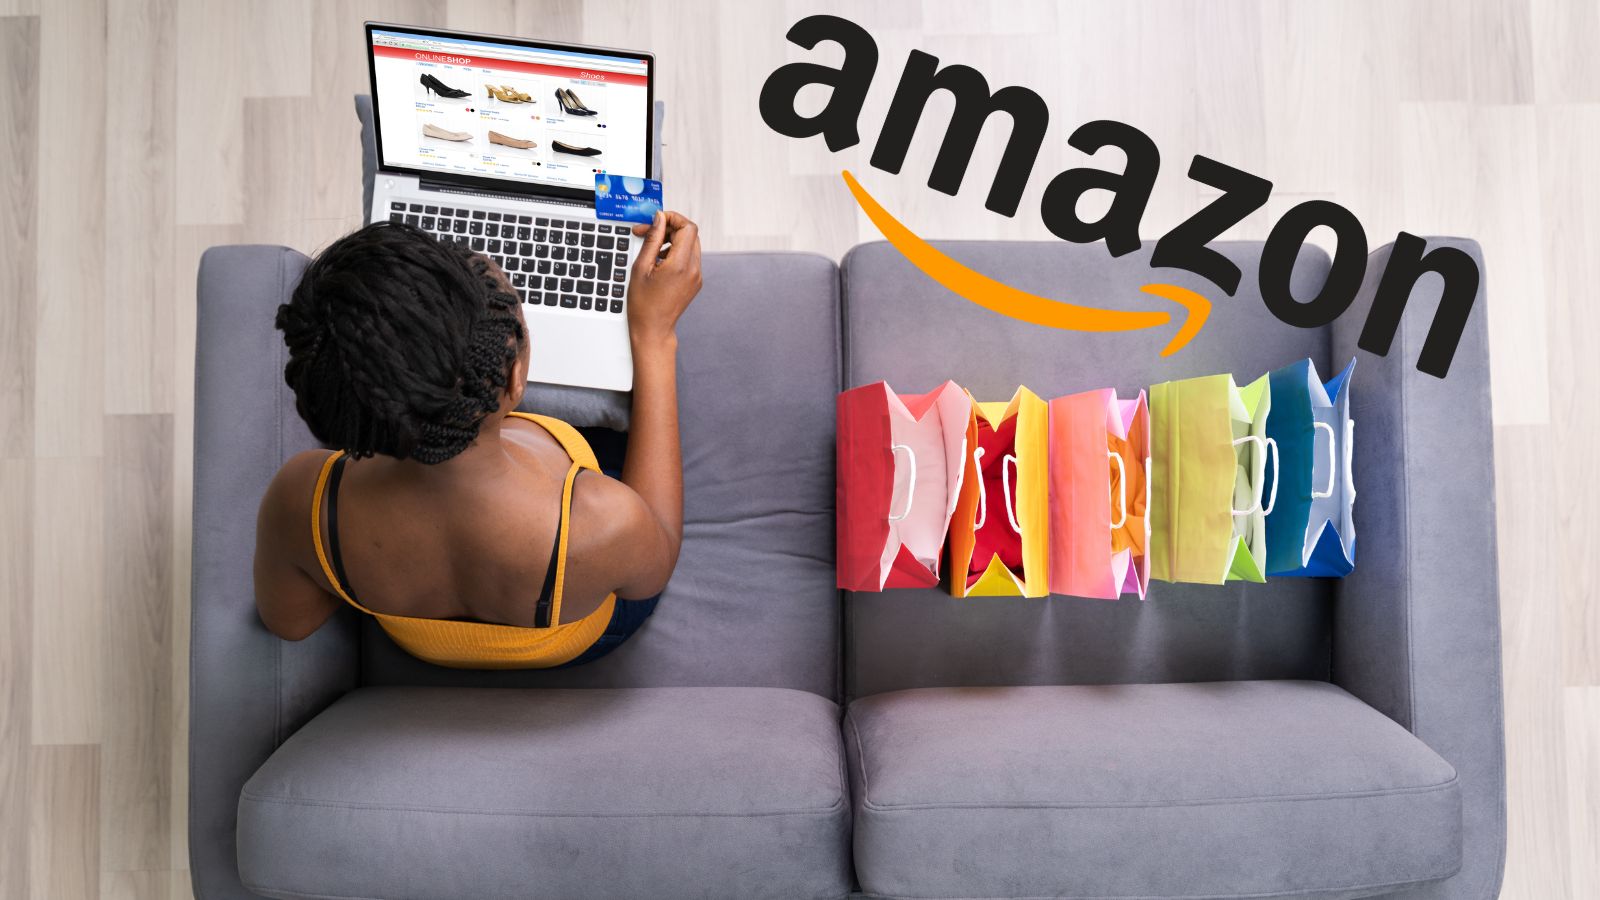 Amazon FOLLIE Black Friday: prezzi al 50% solo oggi